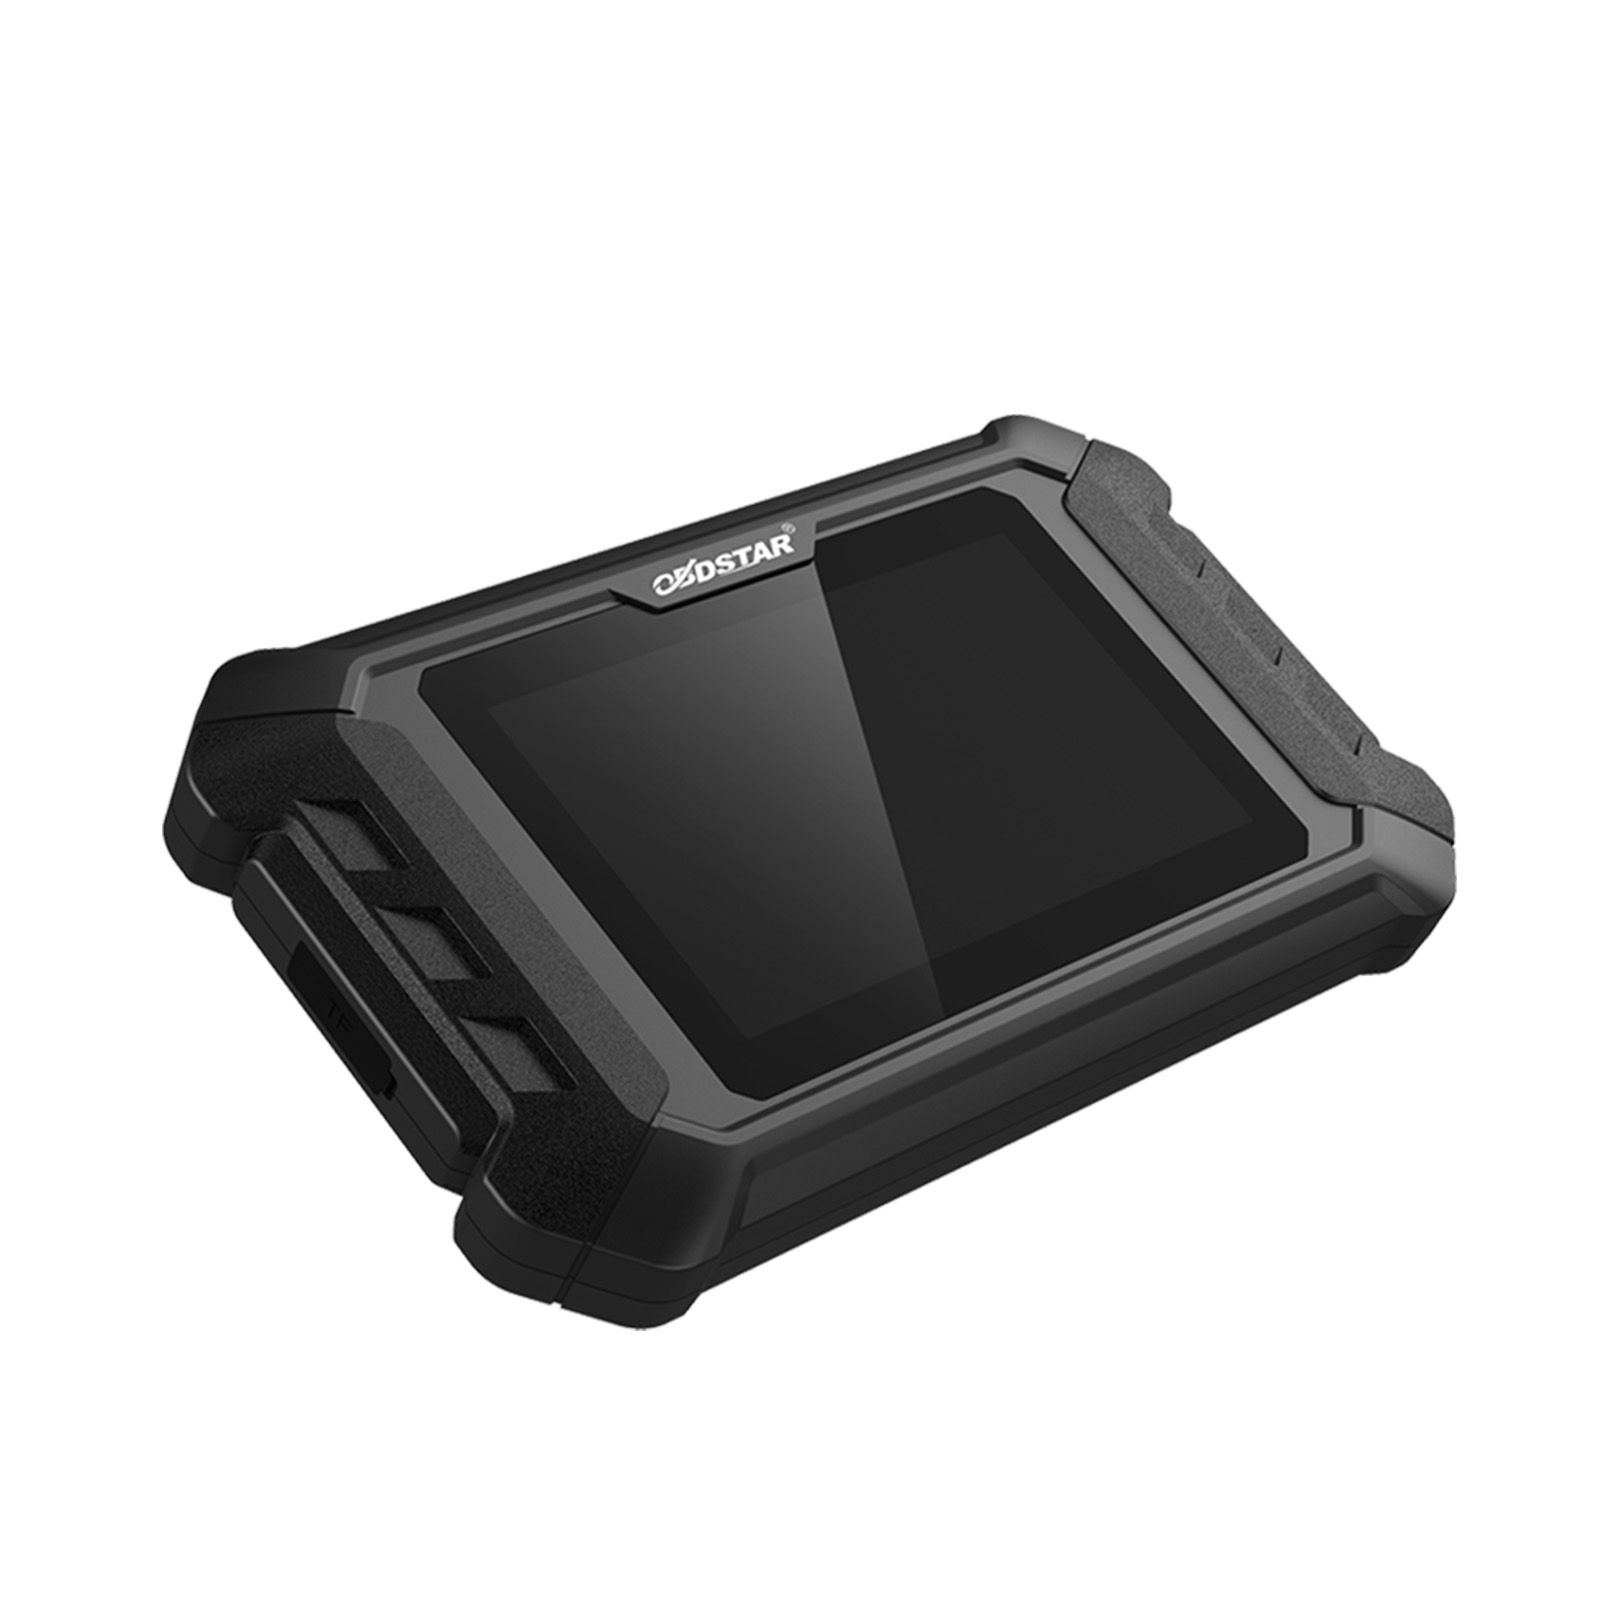 Obdstar iscan MV Agusta SMART Motorcycle Diagnosis Tool portátil tablet scanner